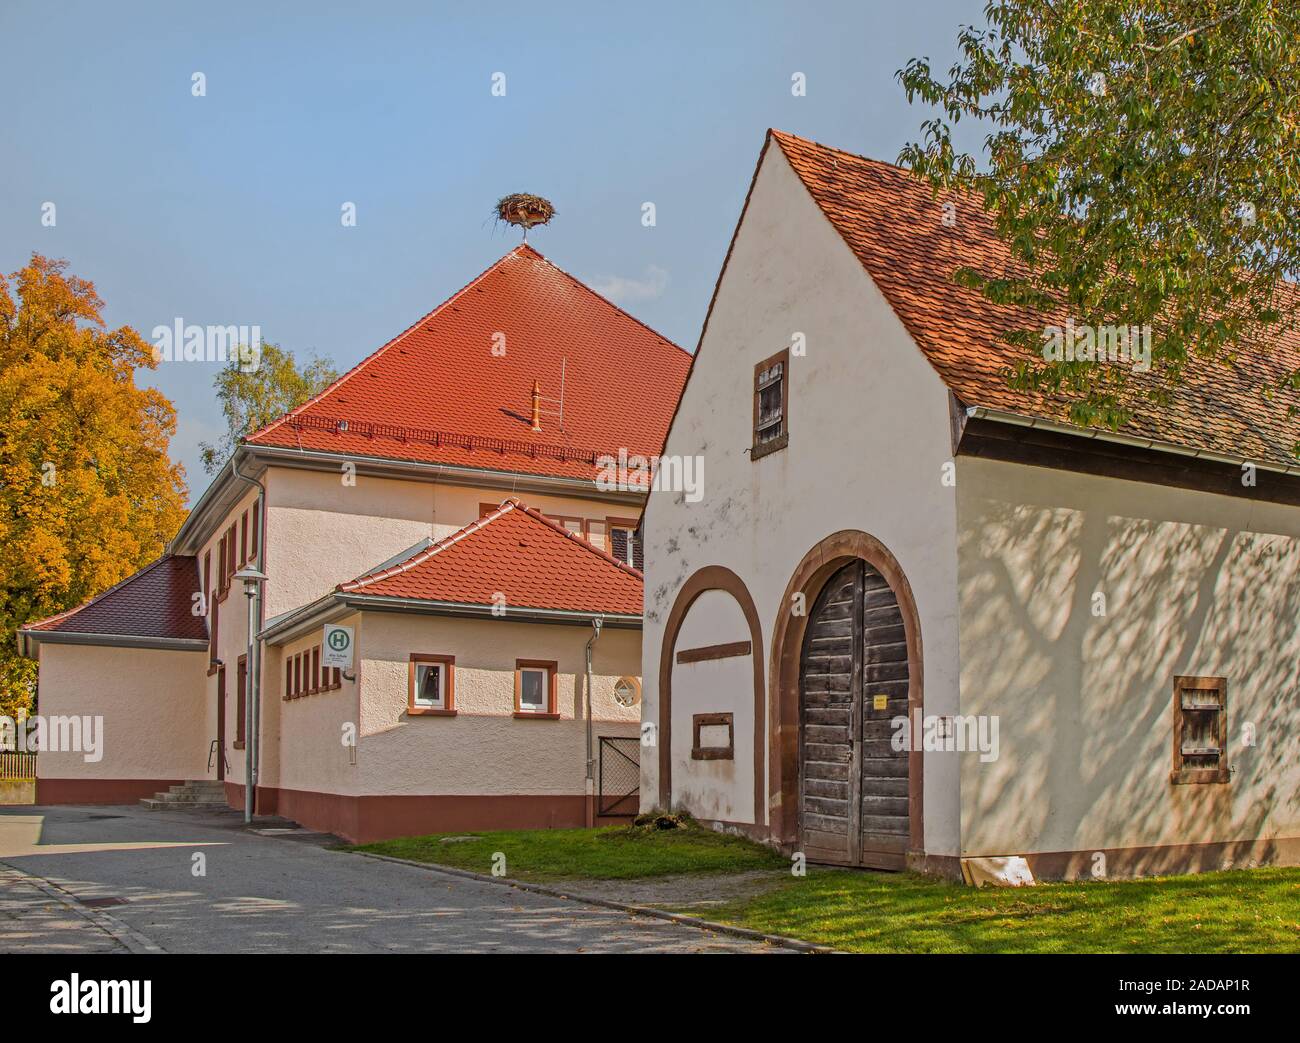 Alte Schule und alte Scheune in Pfohren in der Nähe von Donaueschingen, Schwarzwald Stockfoto